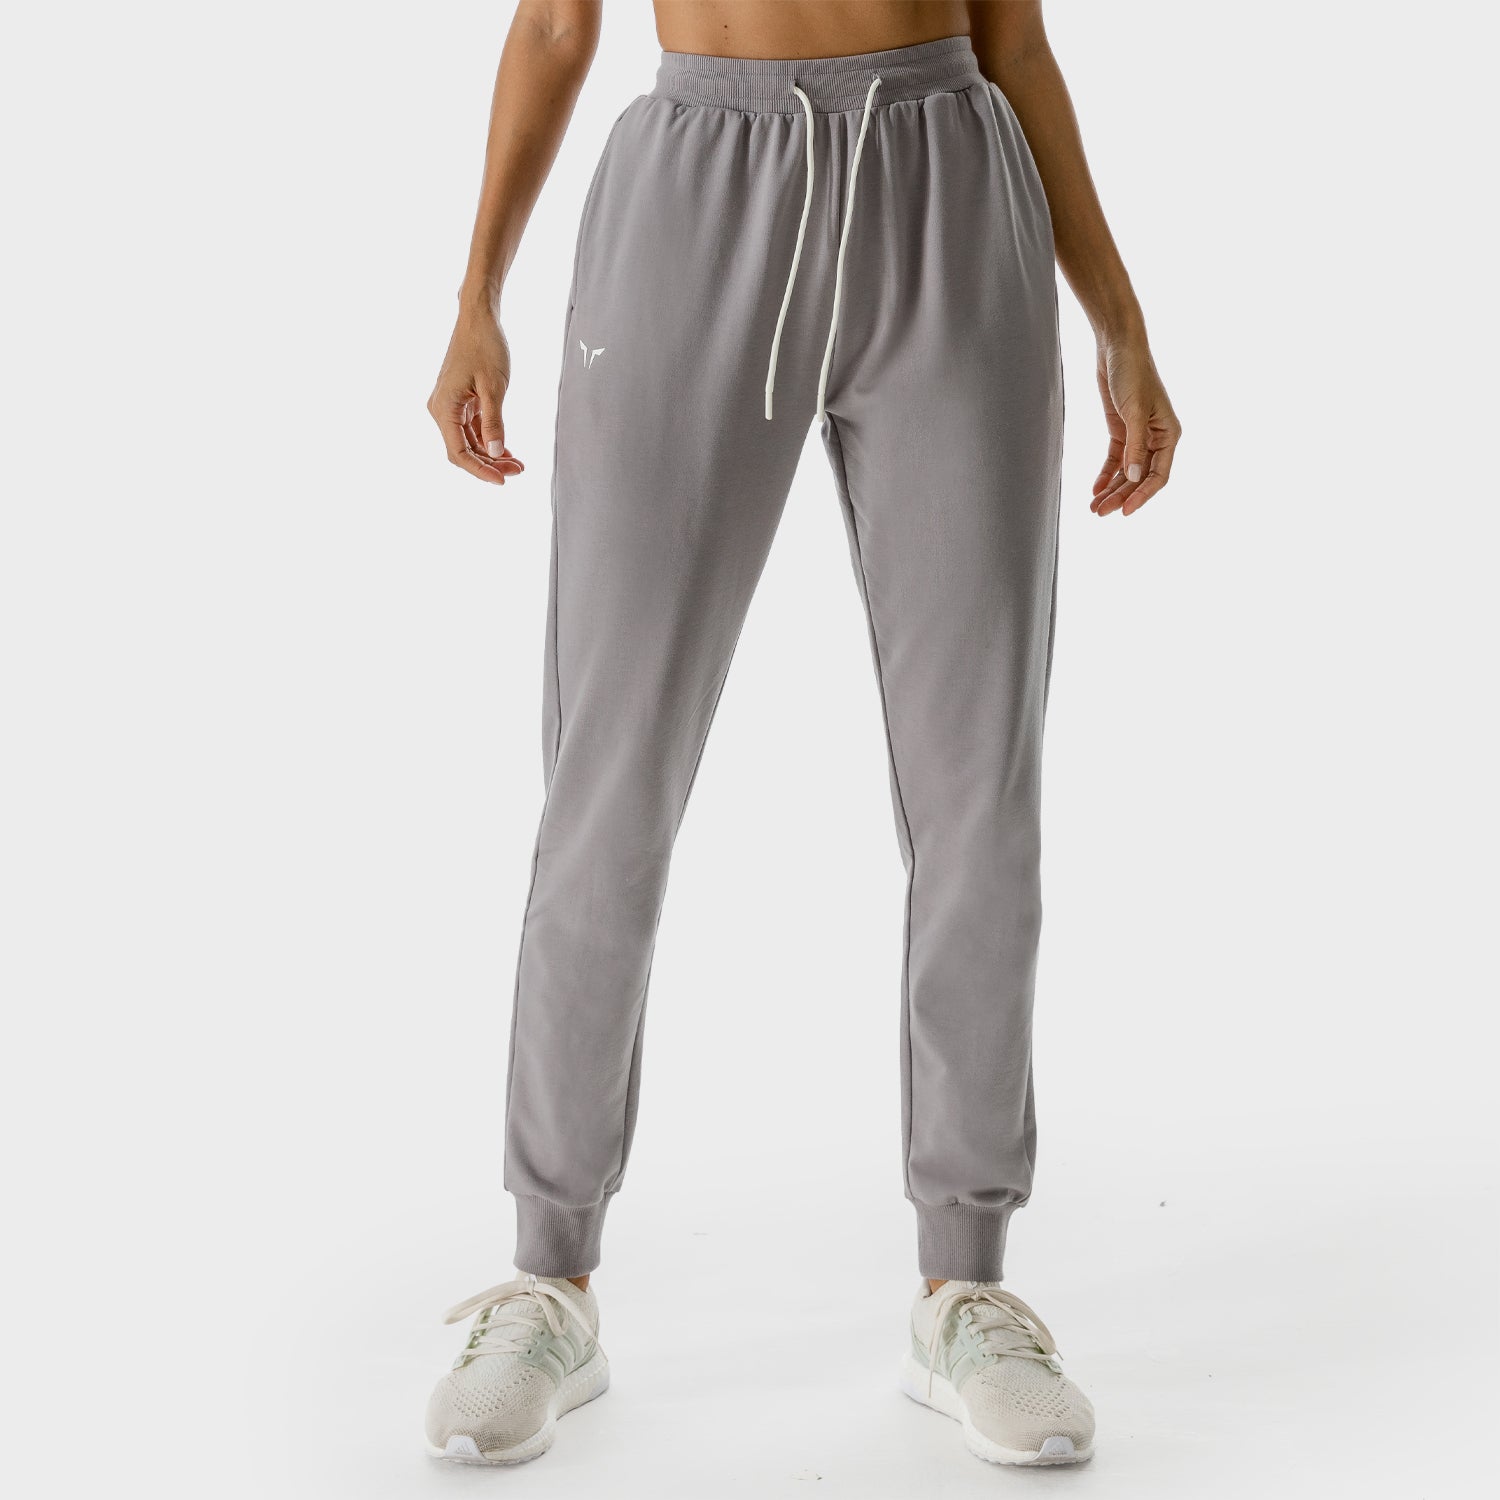 SE, LAB Joggers - Titanium, Workout Pants Women